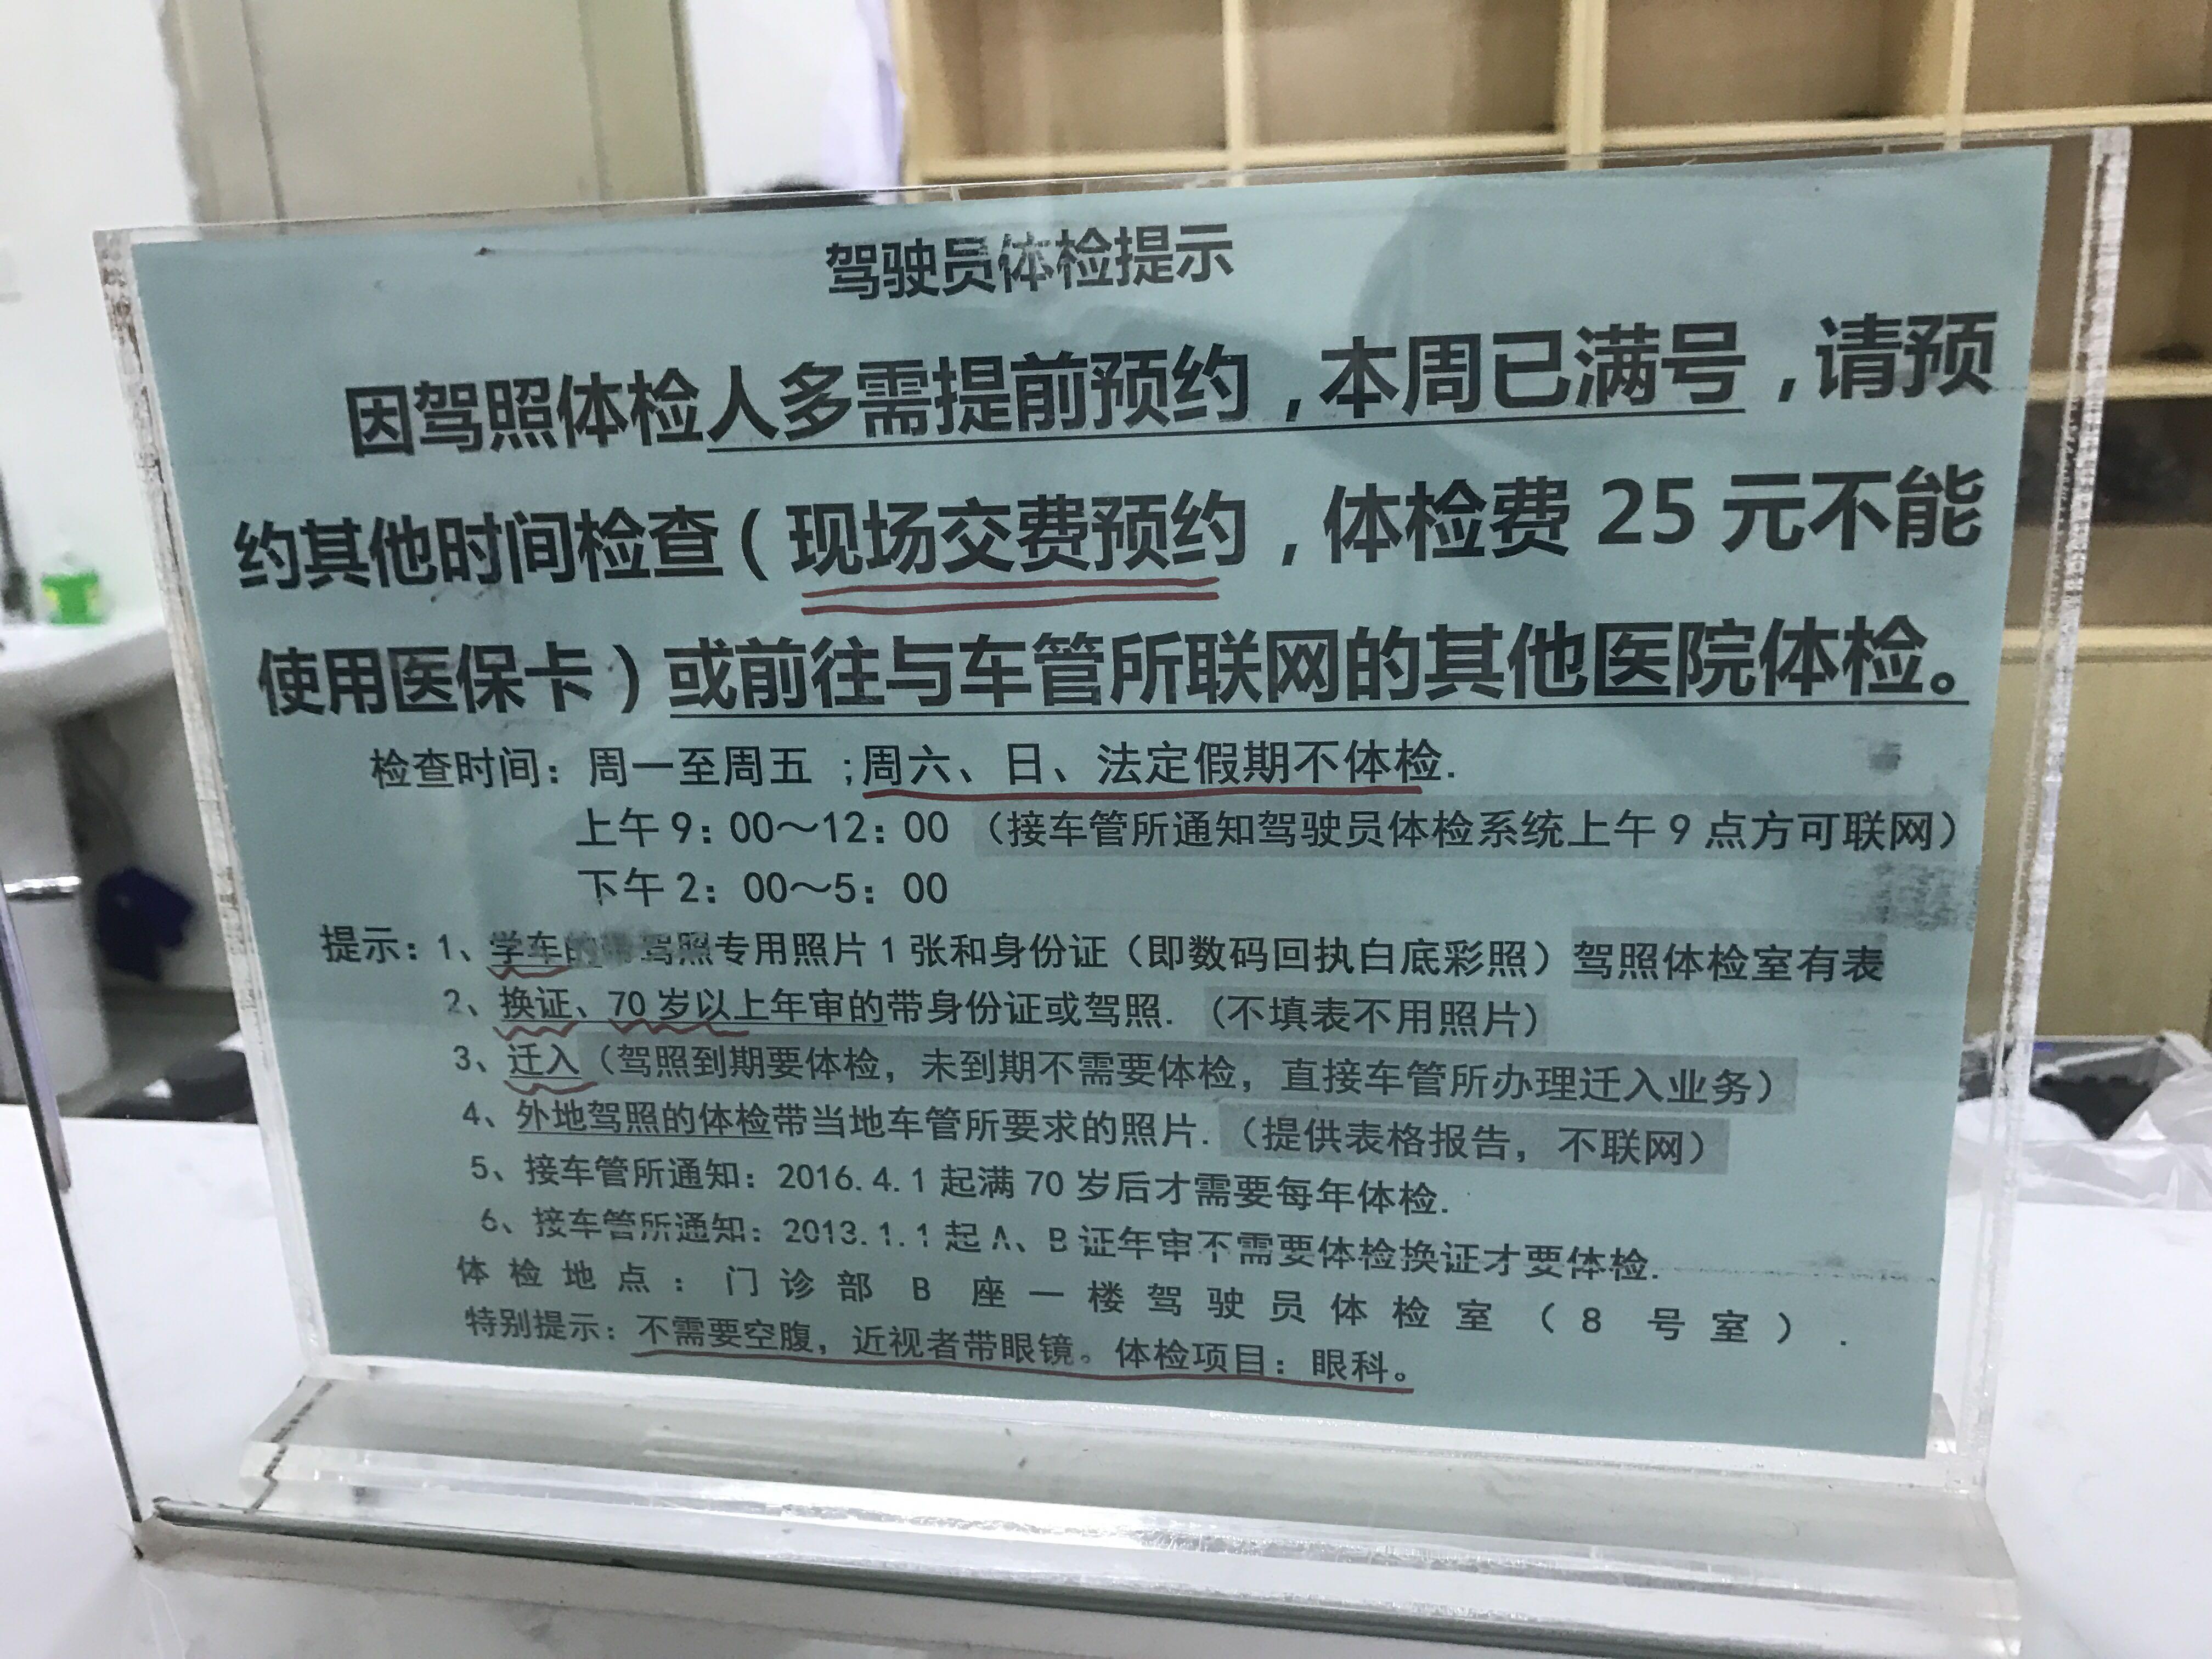 在深圳南山人民医院驾照体检需要提前预约拿号